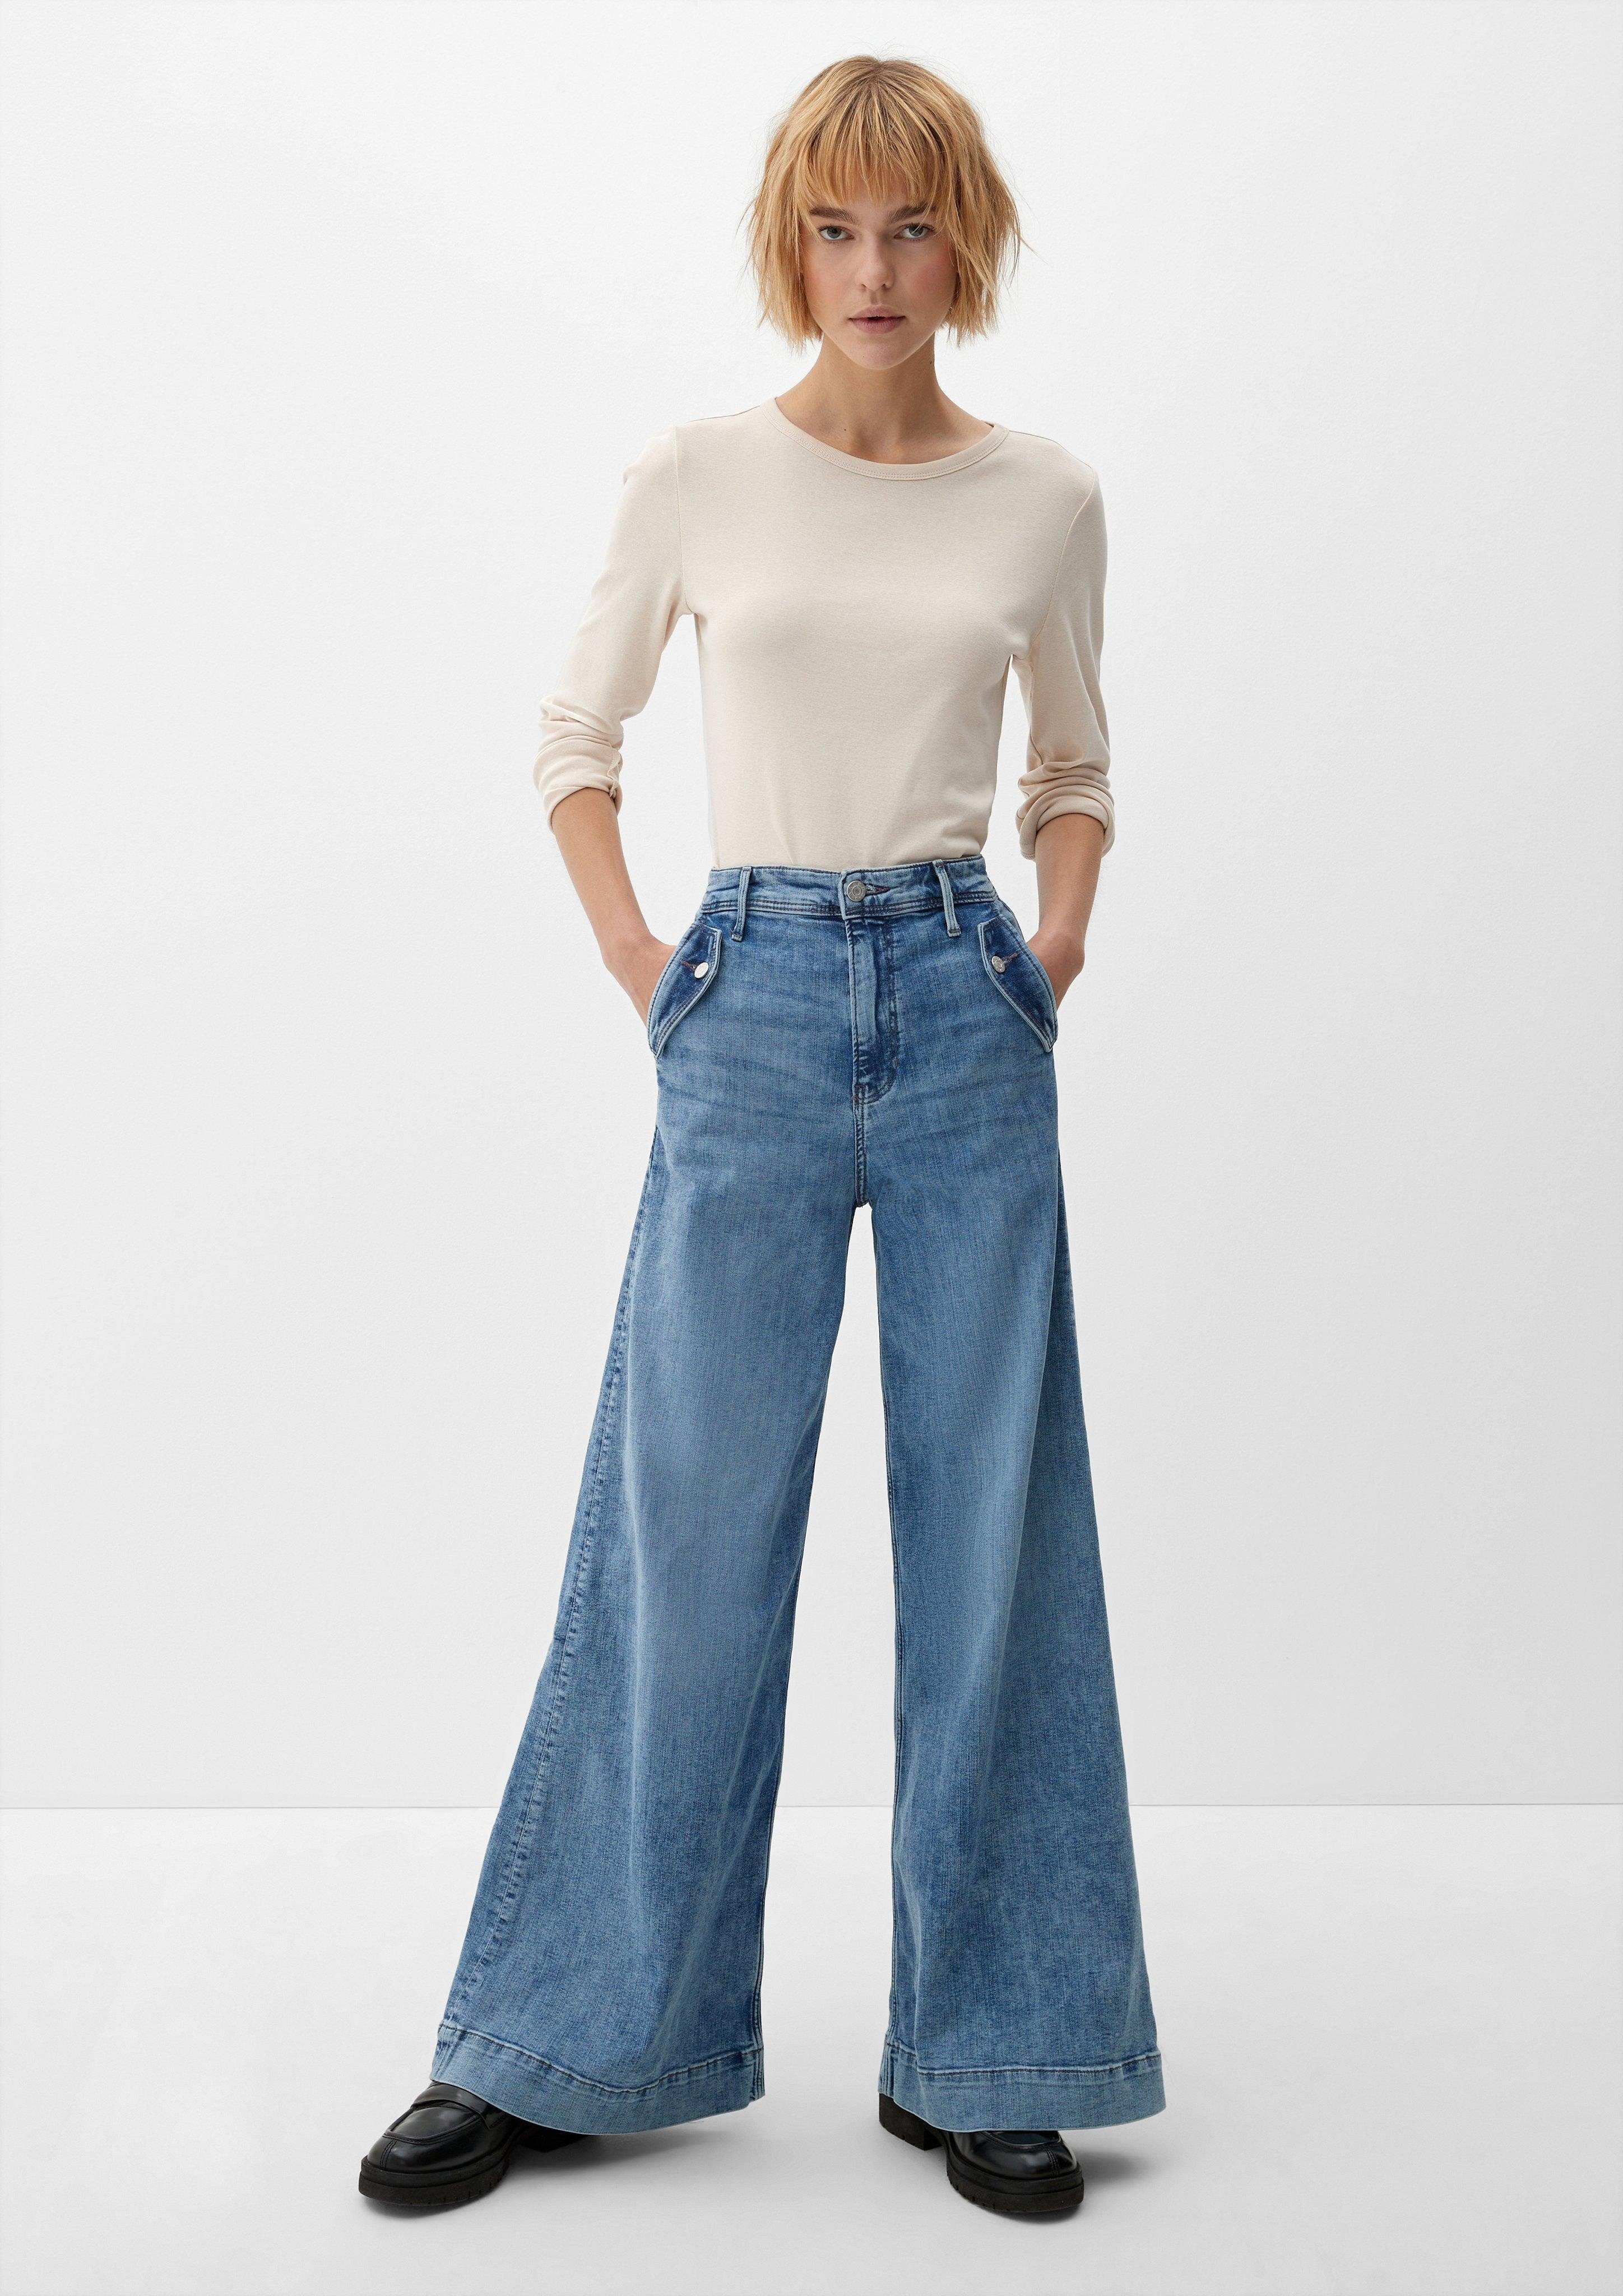 Waschung Leg Fit Wide High Regular / hellblau / s.Oliver Jeans Rise / 5-Pocket-Jeans Suri